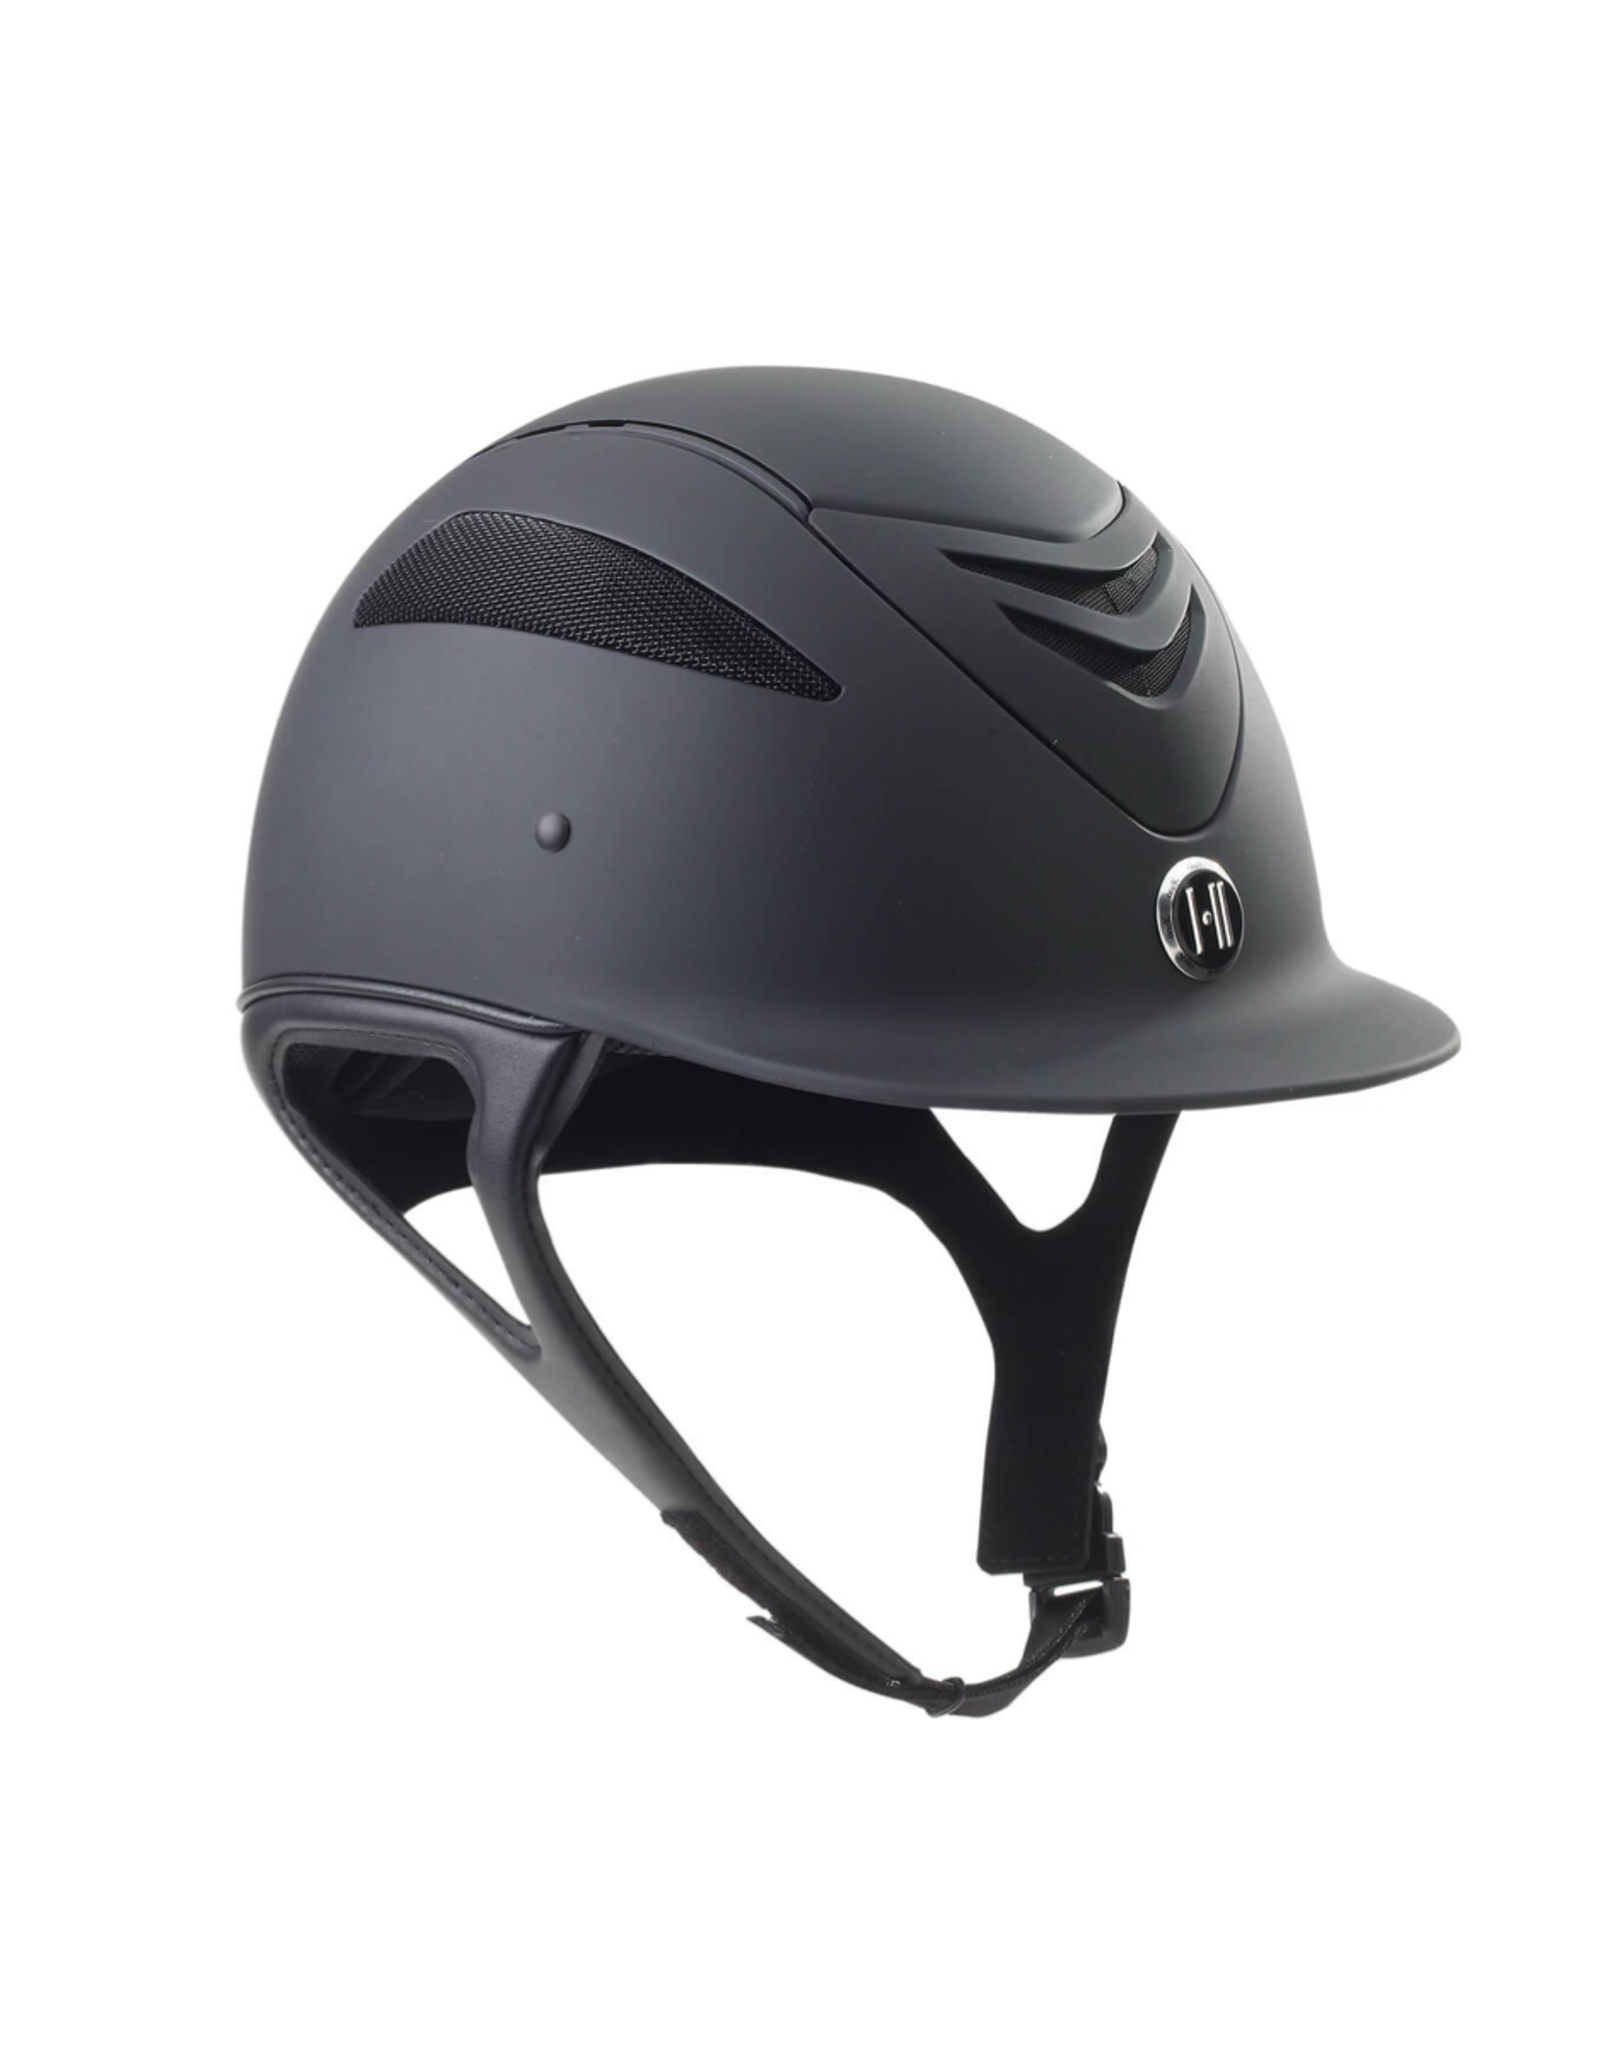 One K Defender Air Smooth Matte Helmet